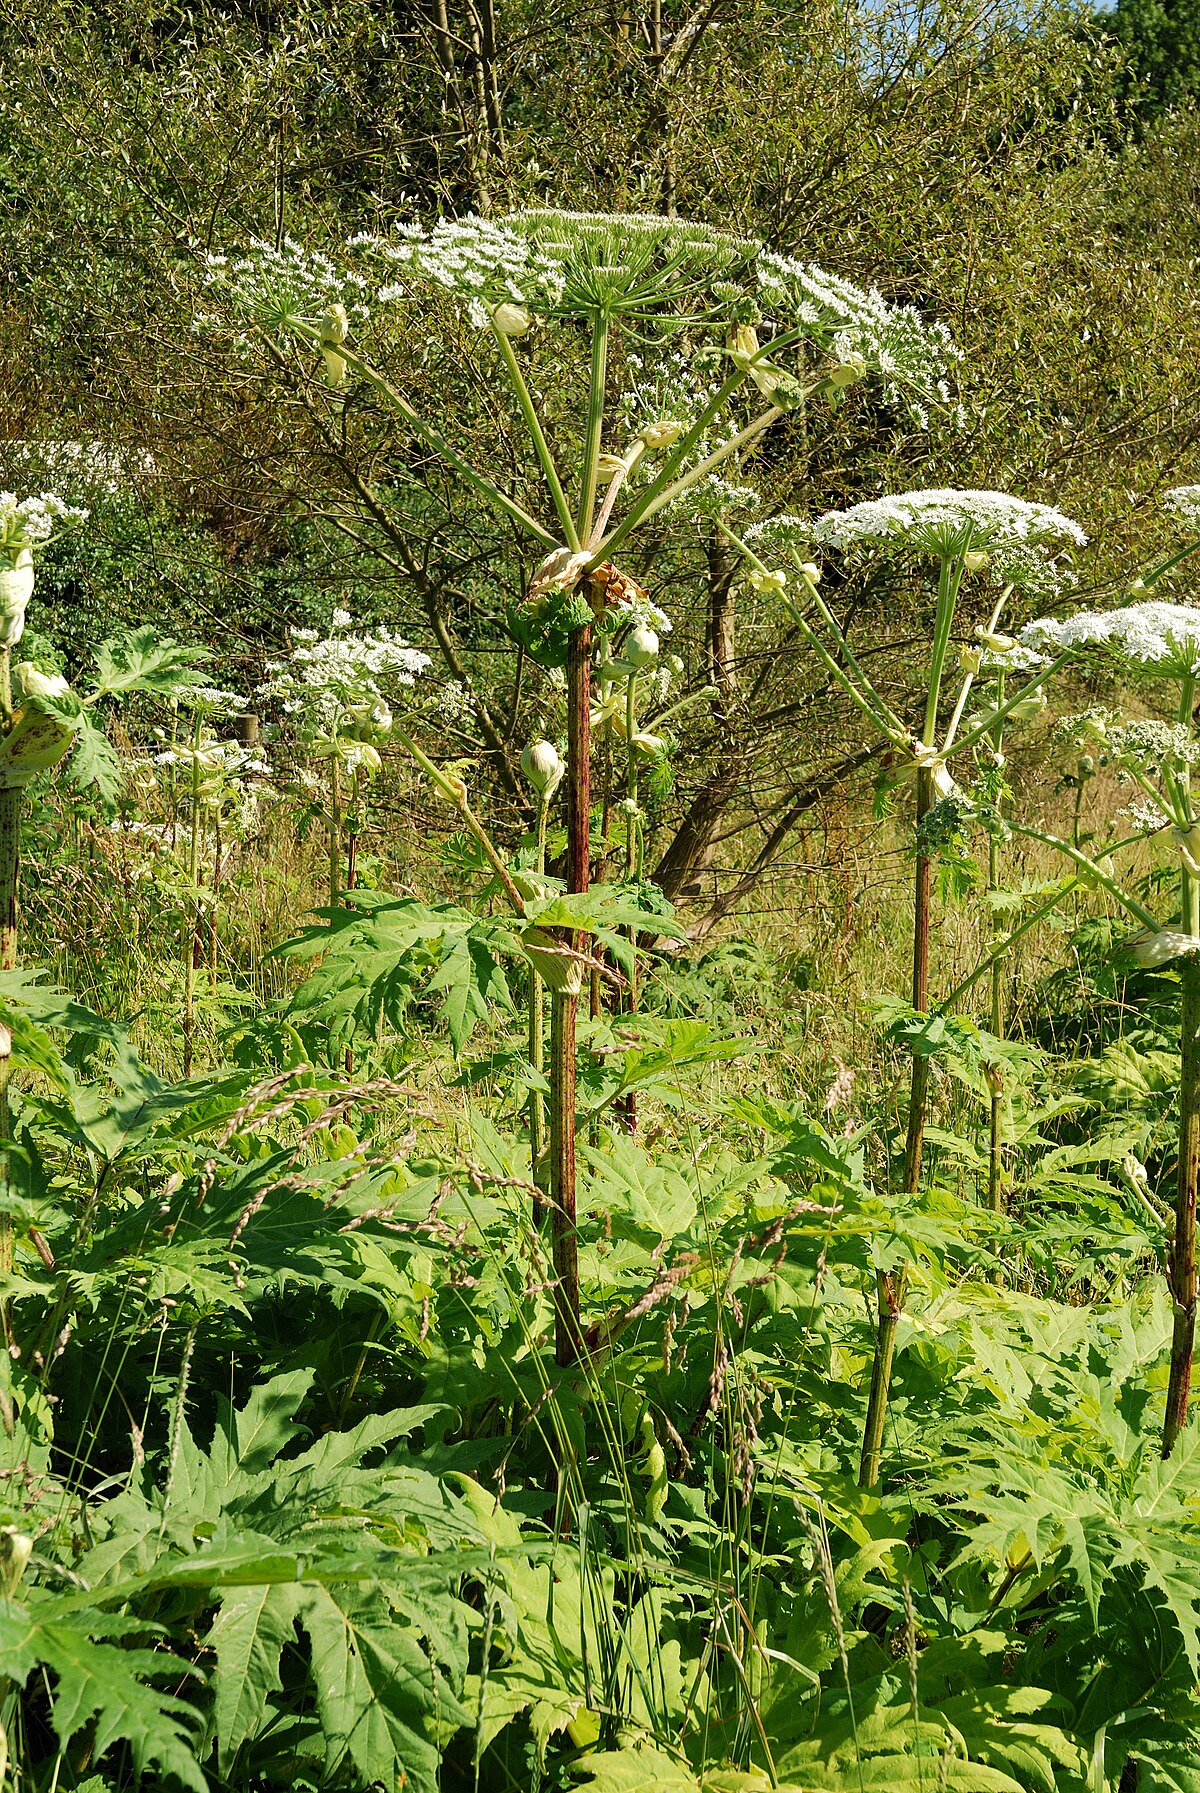 Riesen-Bärenklau (Heracleum mantegazzianum)